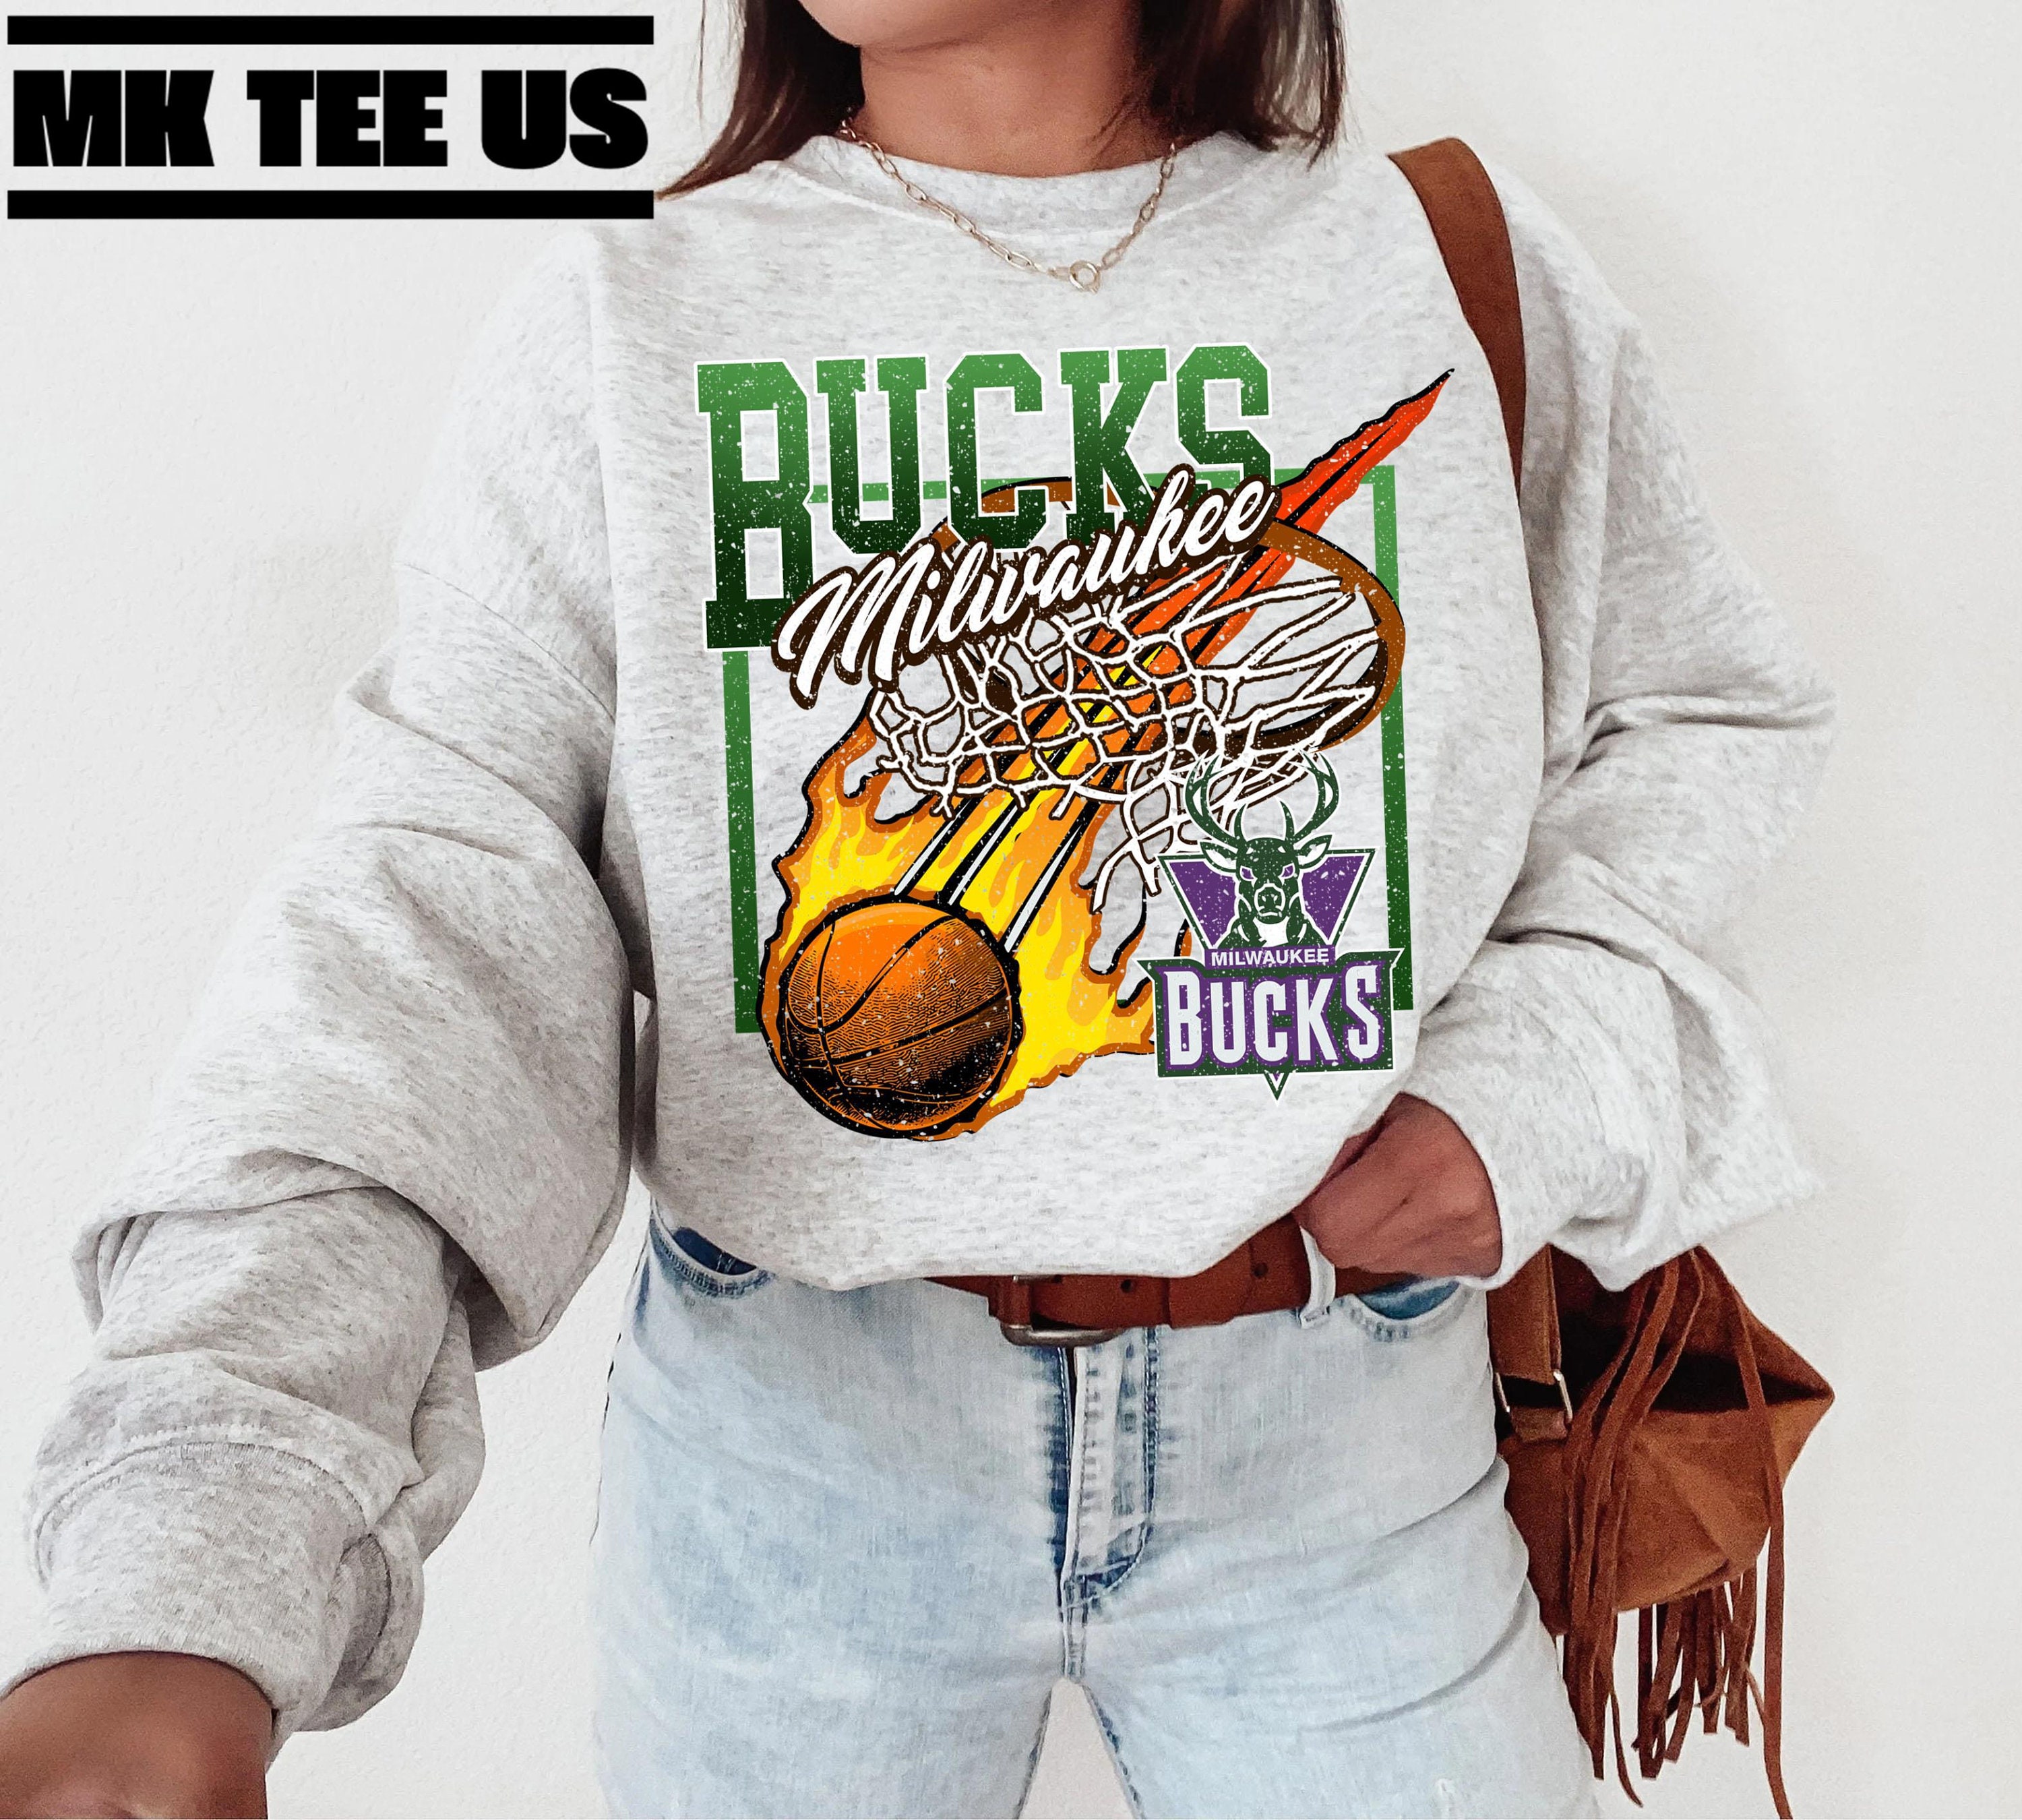 Vintage Milwaukee Bucks T-shirt NBA Basketball Giannis – For All